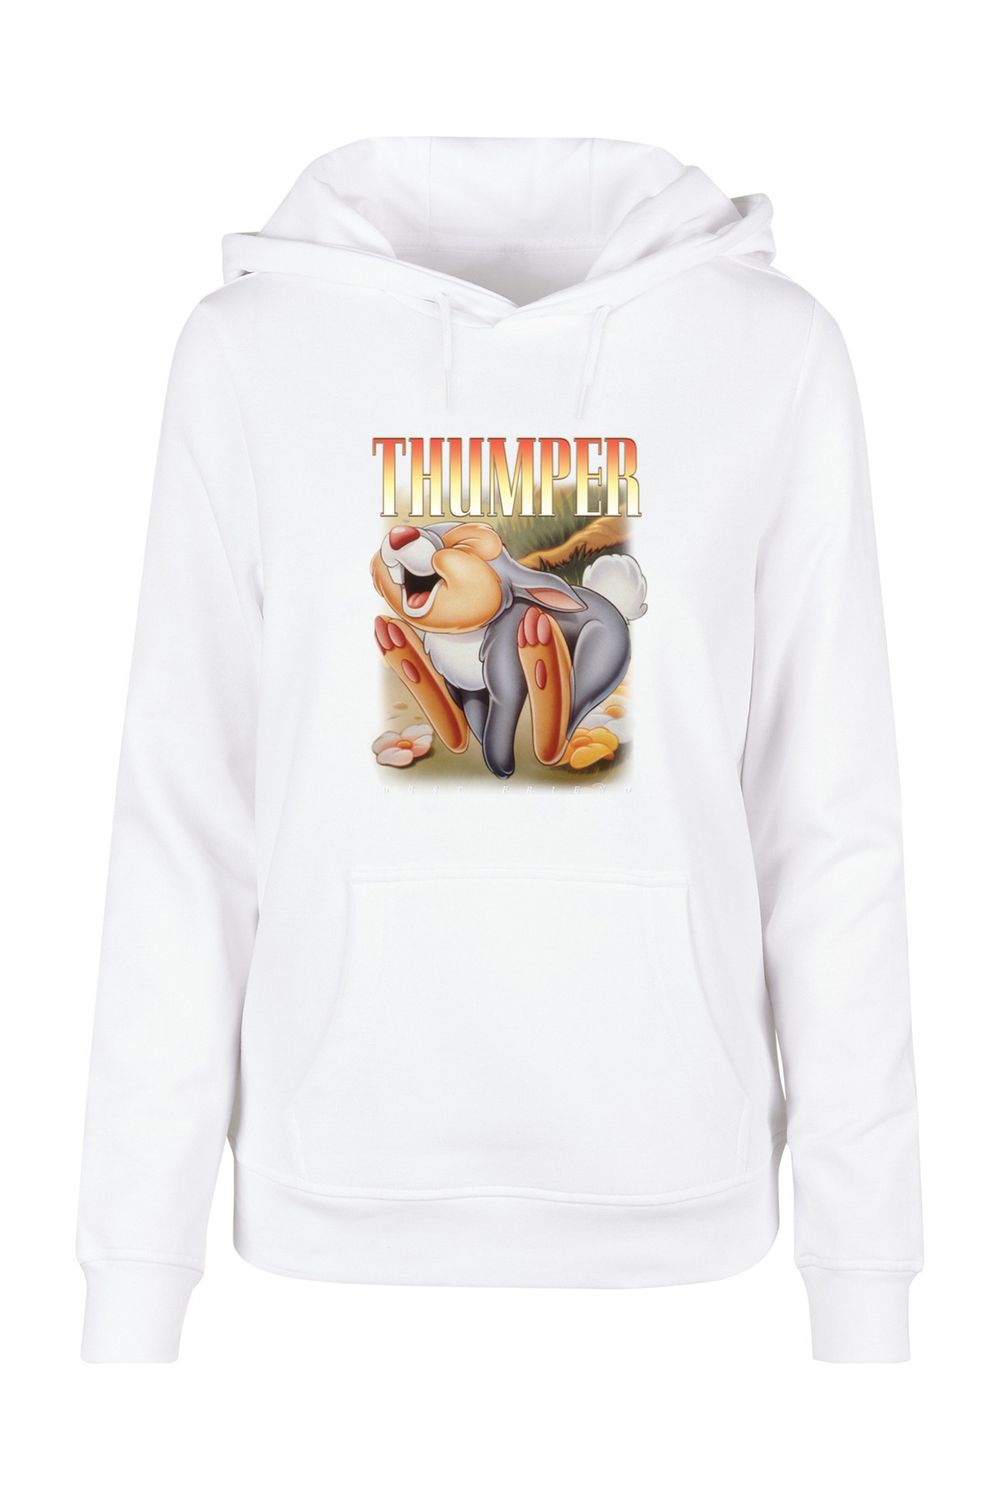 Thumper F4NT4STIC Hoody Trendyol DISNEY-Halsaufdruck Basic - und Montage Bambi Damen mit Ladies